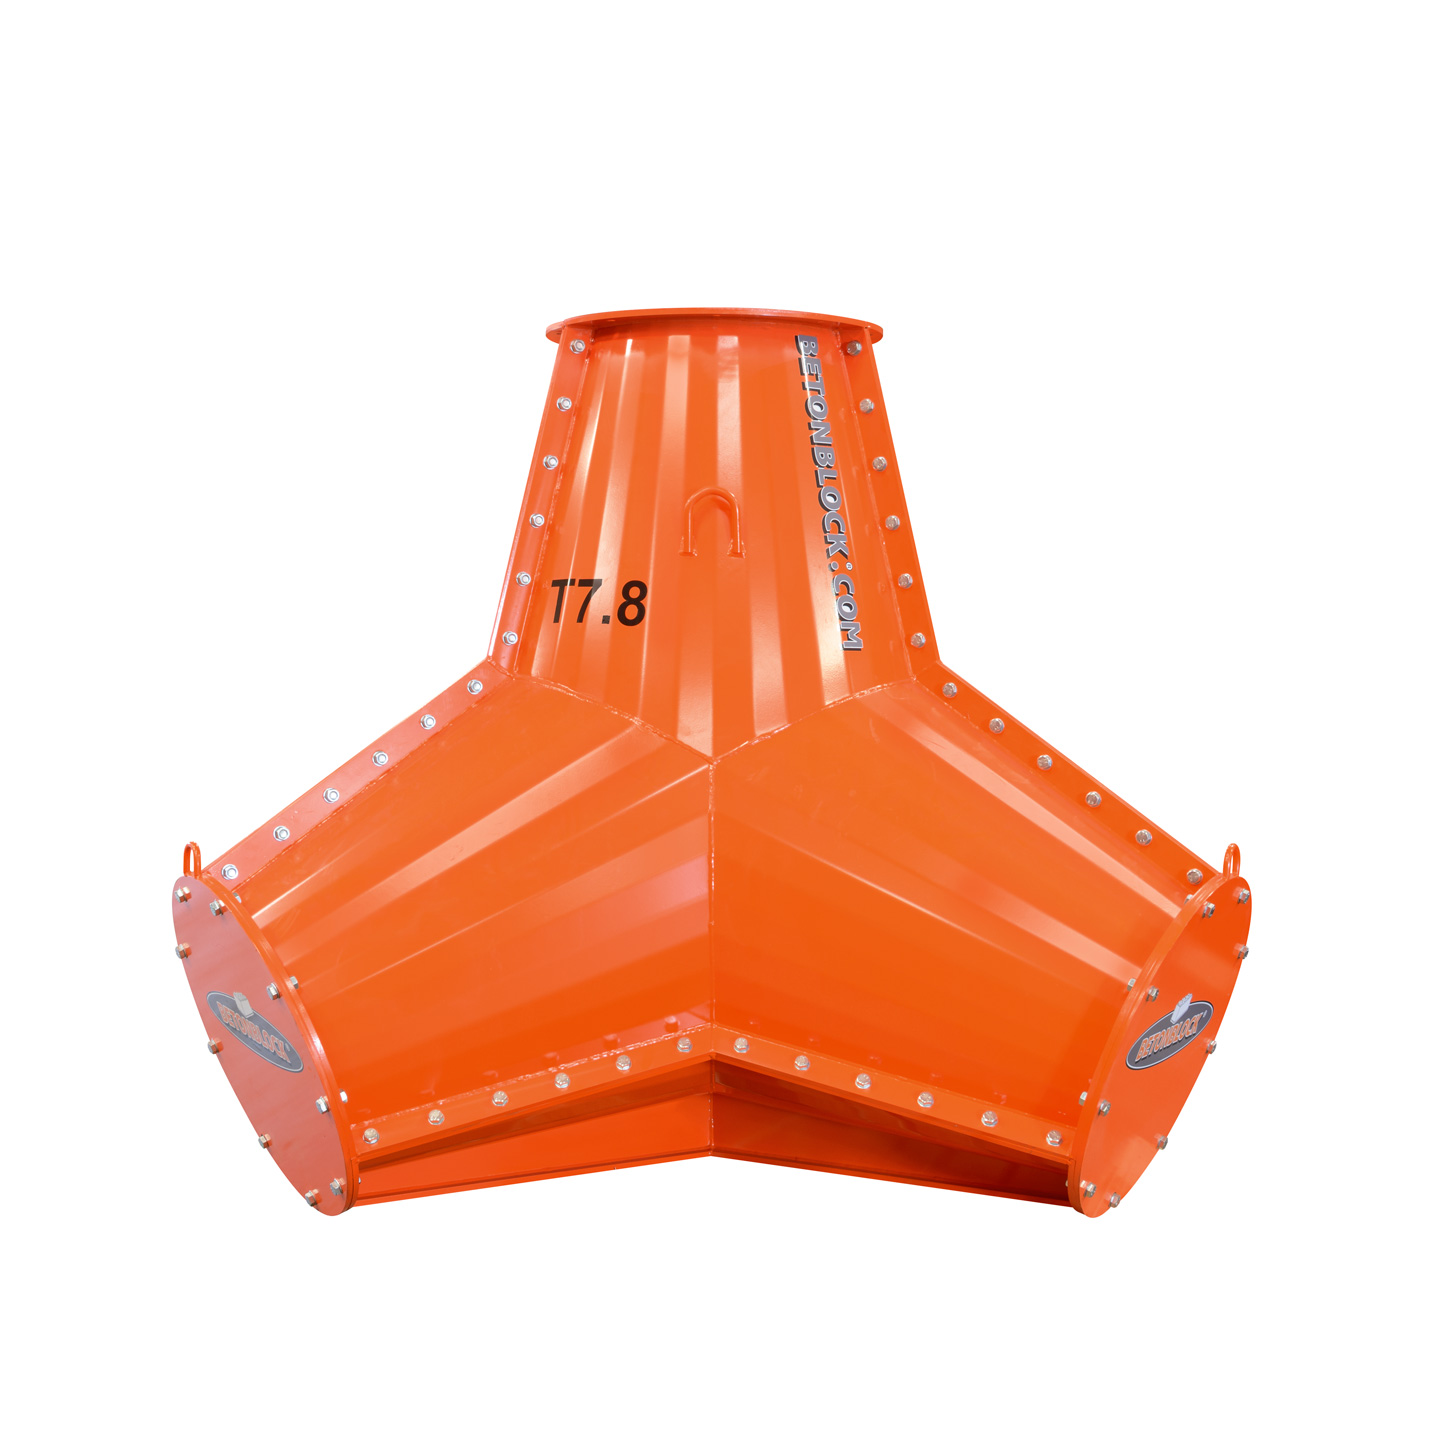 Tetrapodenform aus orangefarbenem Stahl zur Herstellung großer Betontetrapoden mit einem Gewicht von 7800 kg